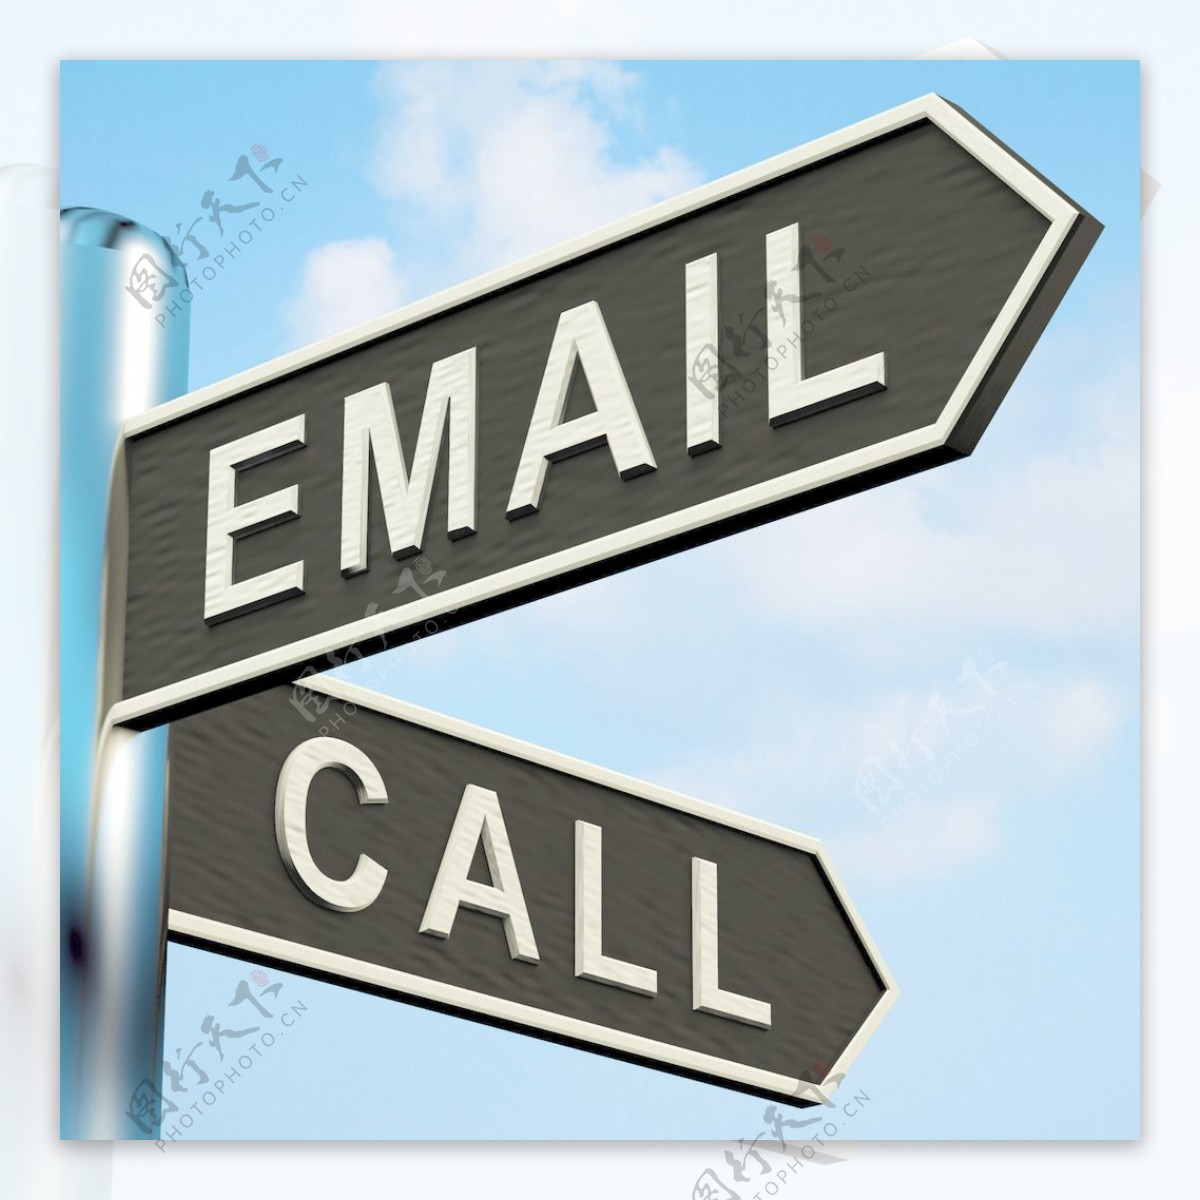 发邮件或打电话的一个路标的方向